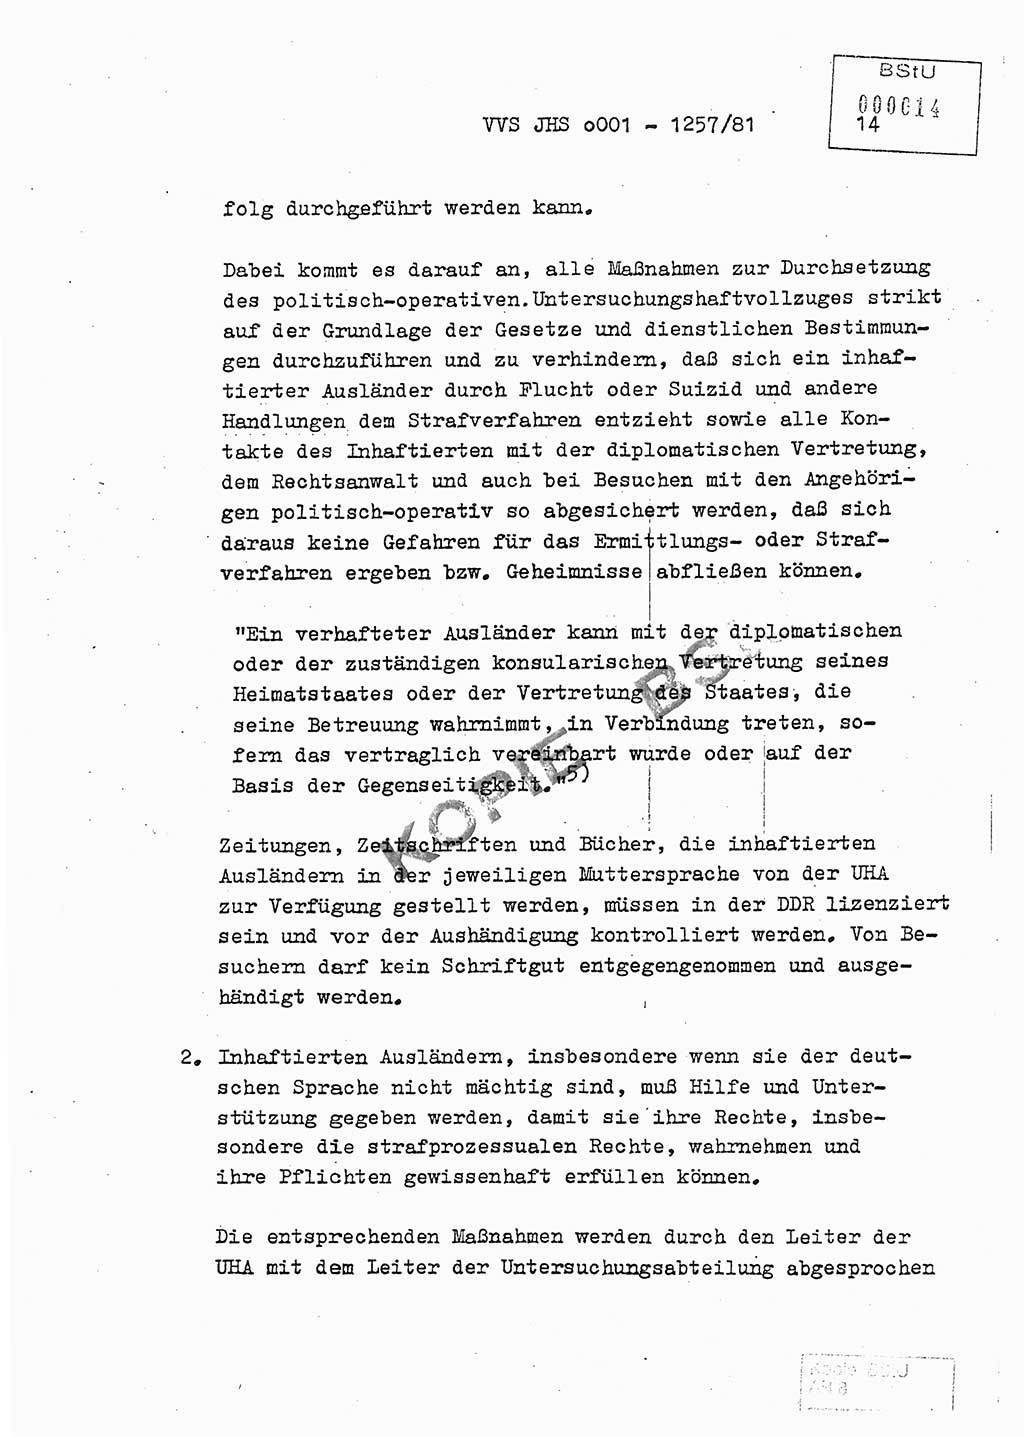 Fachschulabschlußarbeit Unterleutnant Dieter Möller (BV Rst. Abt. ⅩⅣ), Ministerium für Staatssicherheit (MfS) [Deutsche Demokratische Republik (DDR)], Juristische Hochschule (JHS), Vertrauliche Verschlußsache (VVS) o001-1257/81, Potsdam 1982, Seite 14 (FS-Abschl.-Arb. MfS DDR JHS VVS o001-1257/81 1982, S. 14)